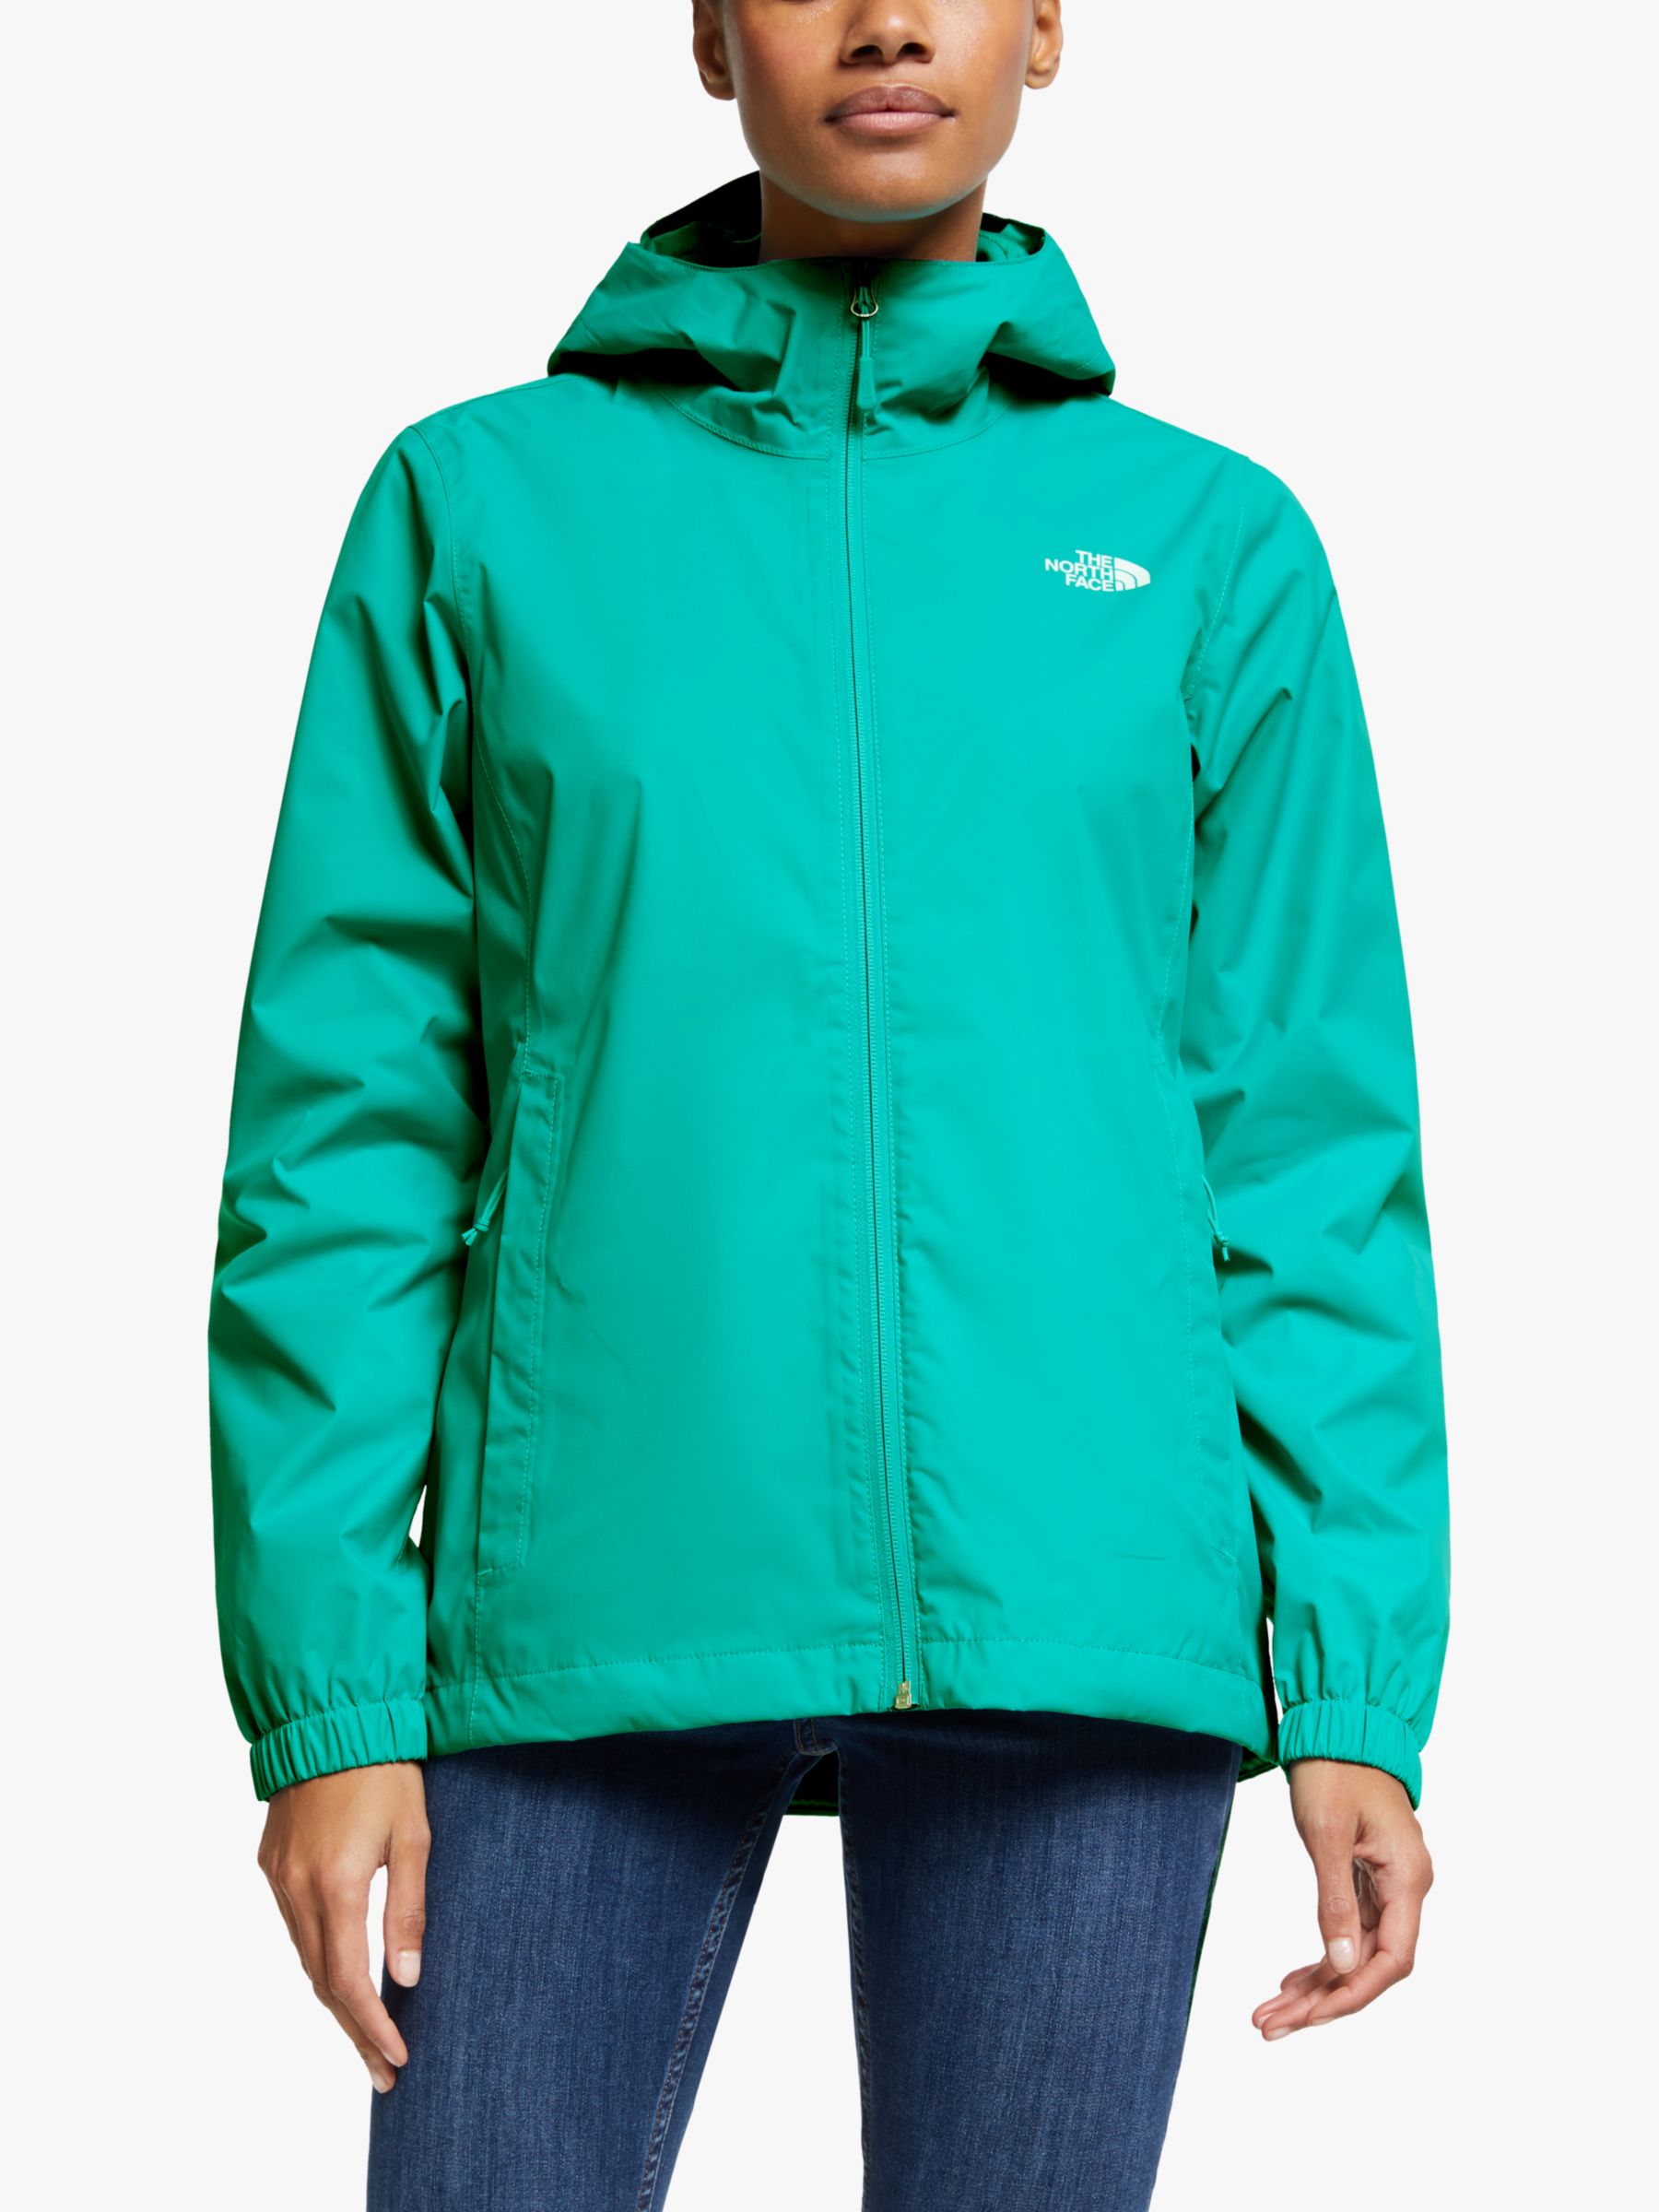 North Face Quest Women's Waterproof Jacket, Jaiden Green, S